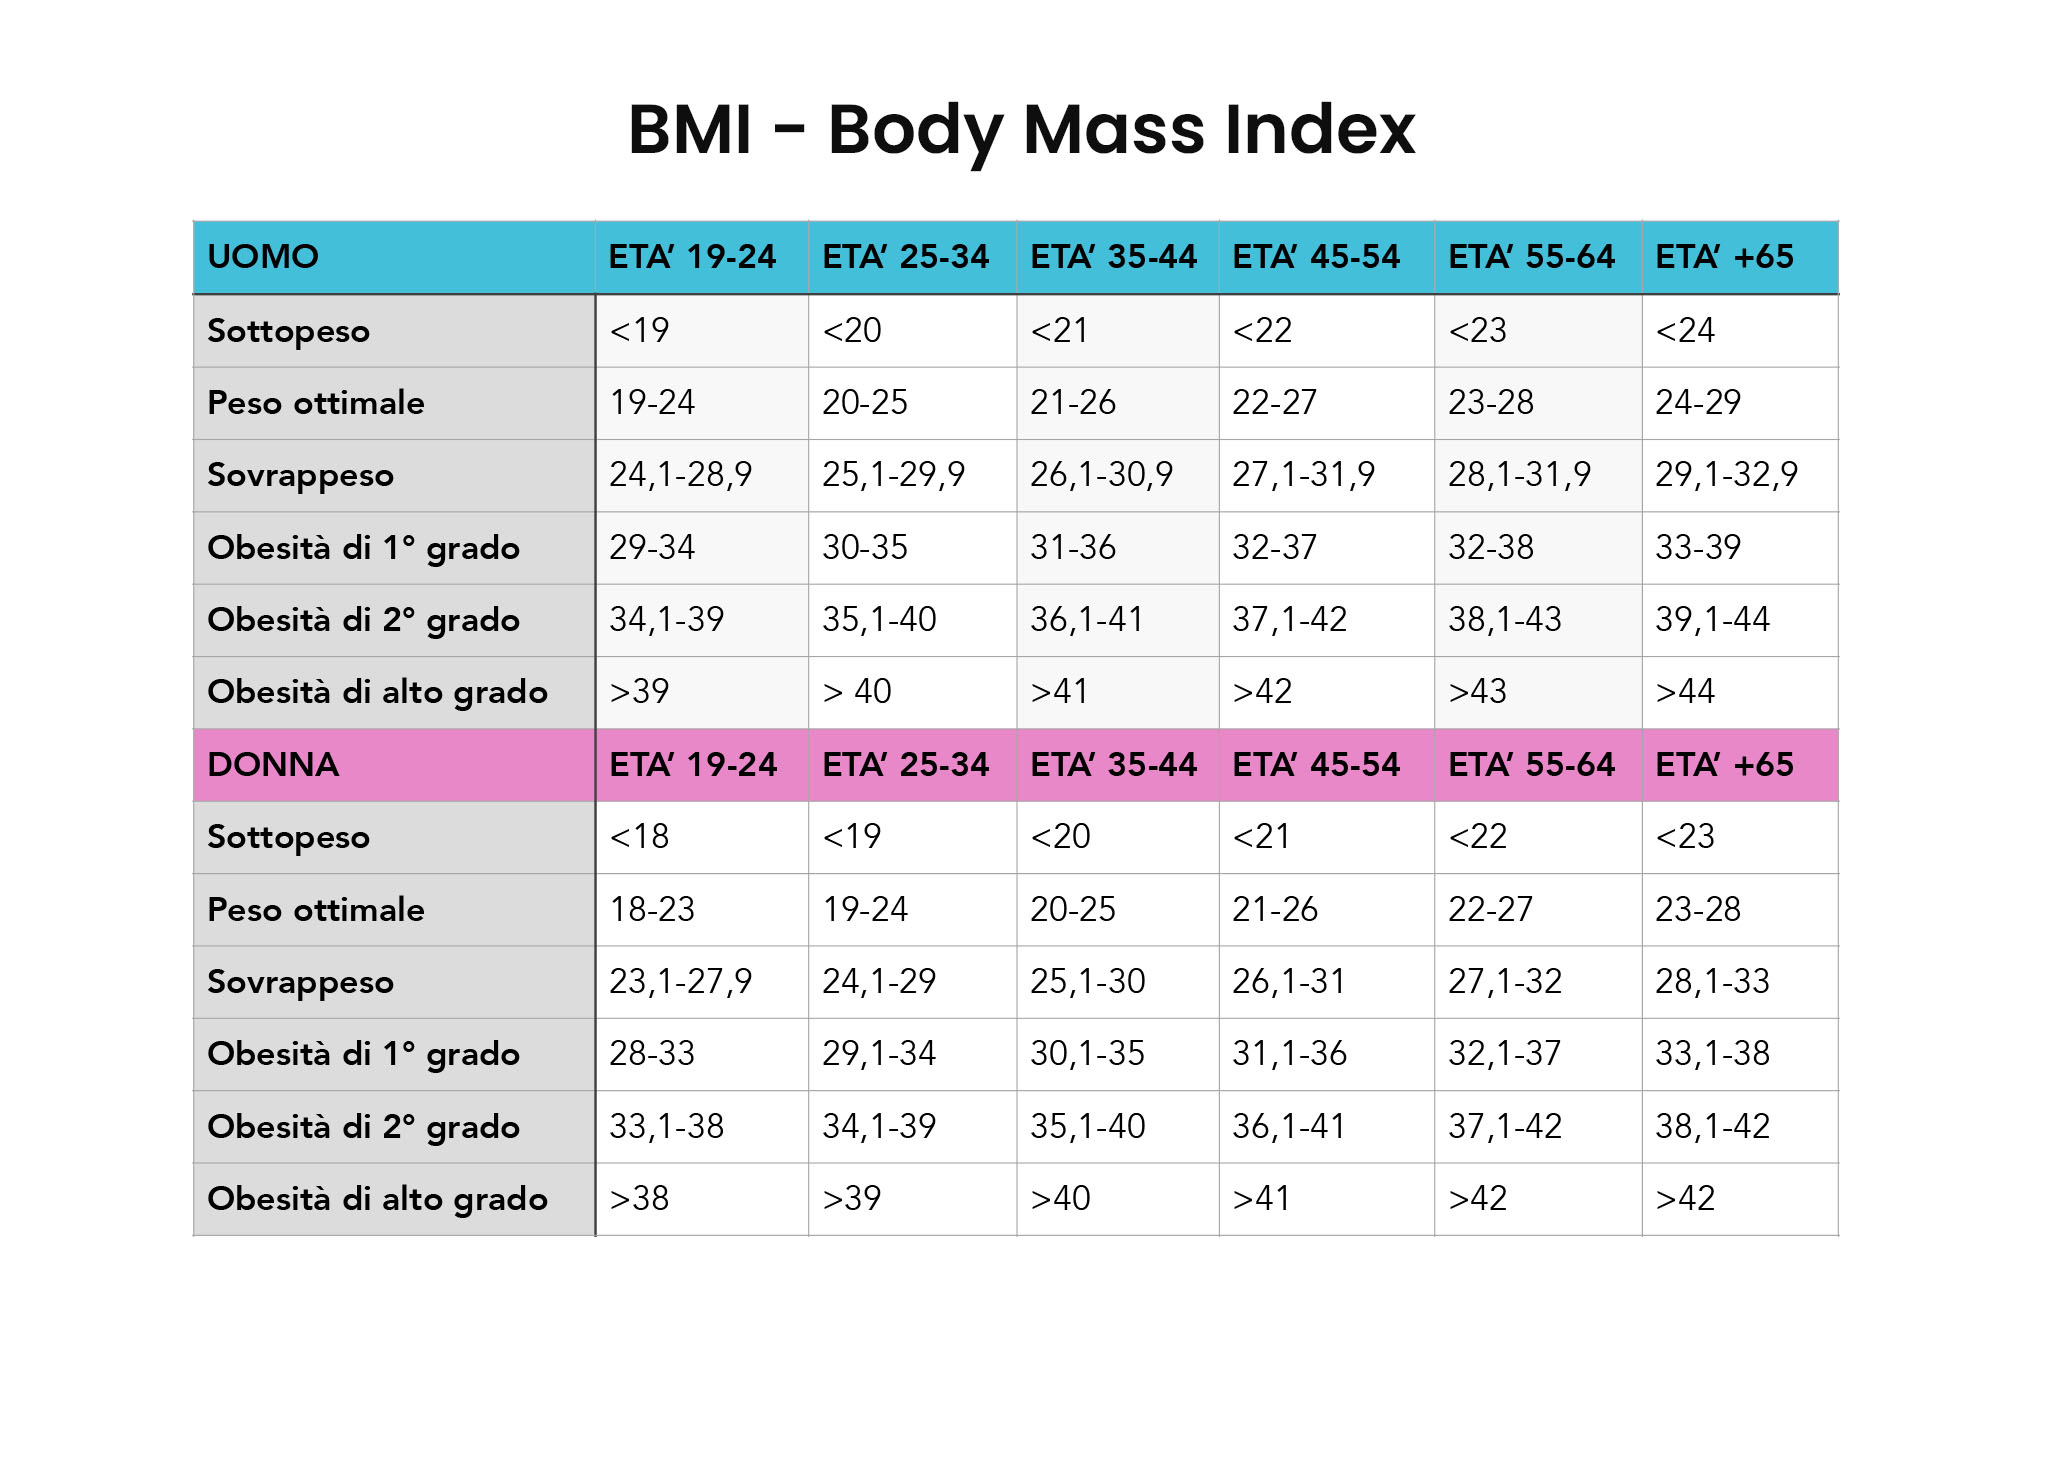 tabella di riferimento per il calcolo BMI